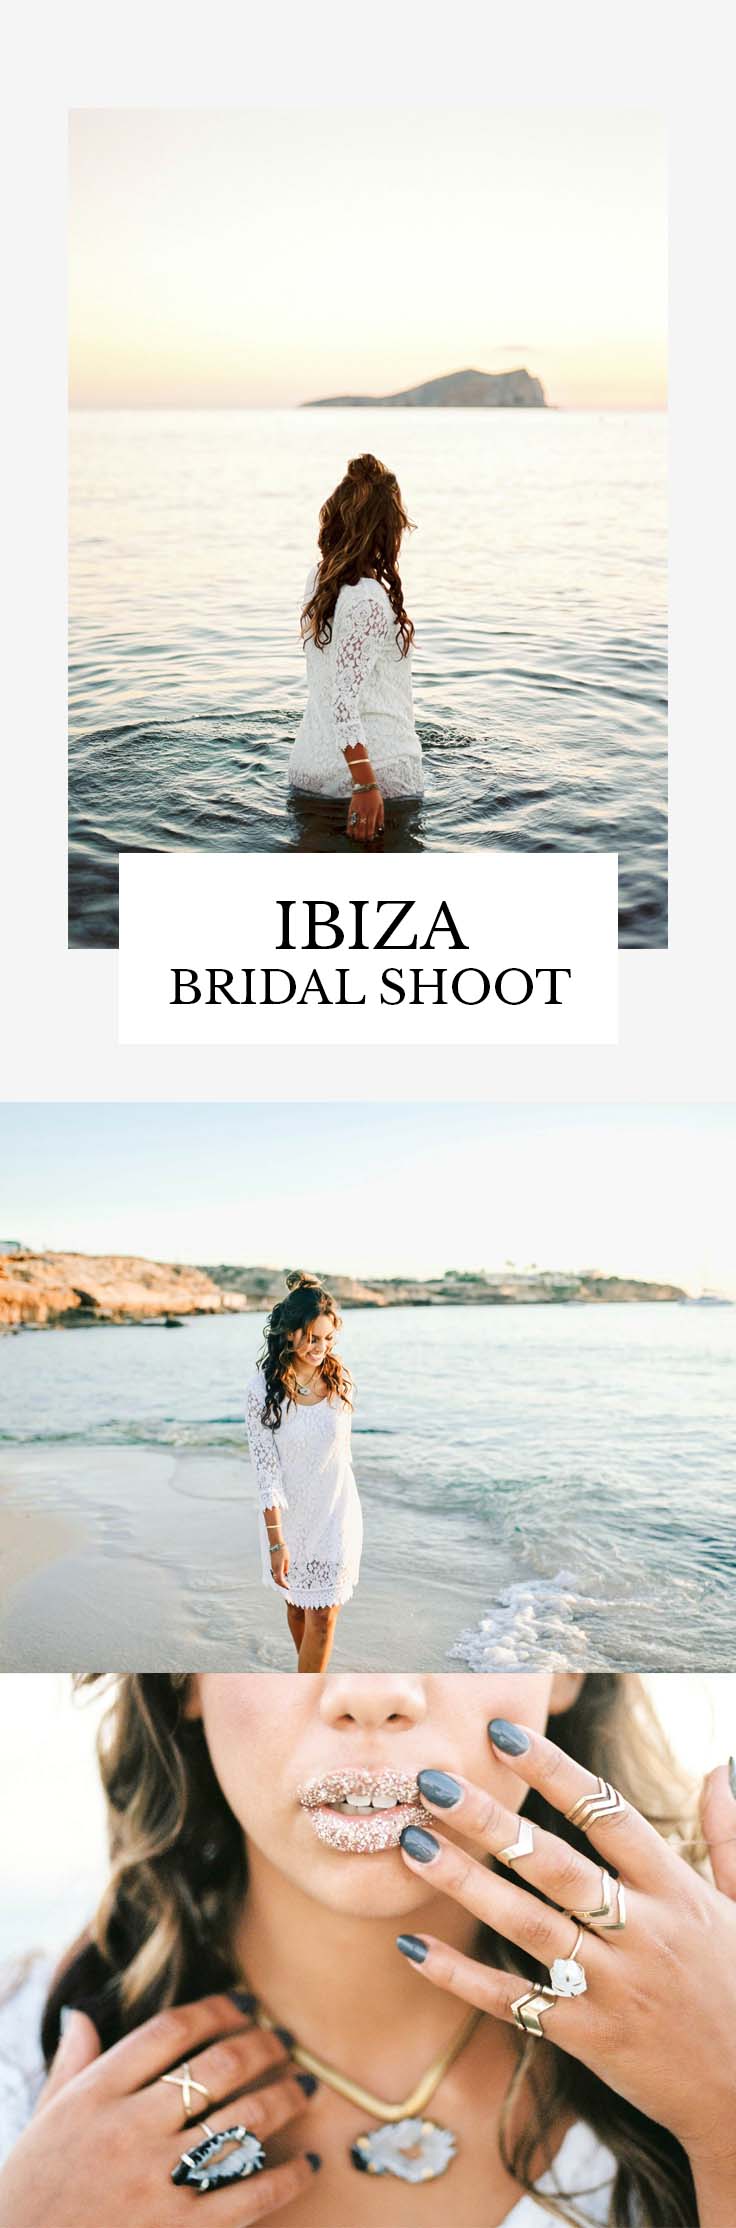 Ibiza Bridal Shoot